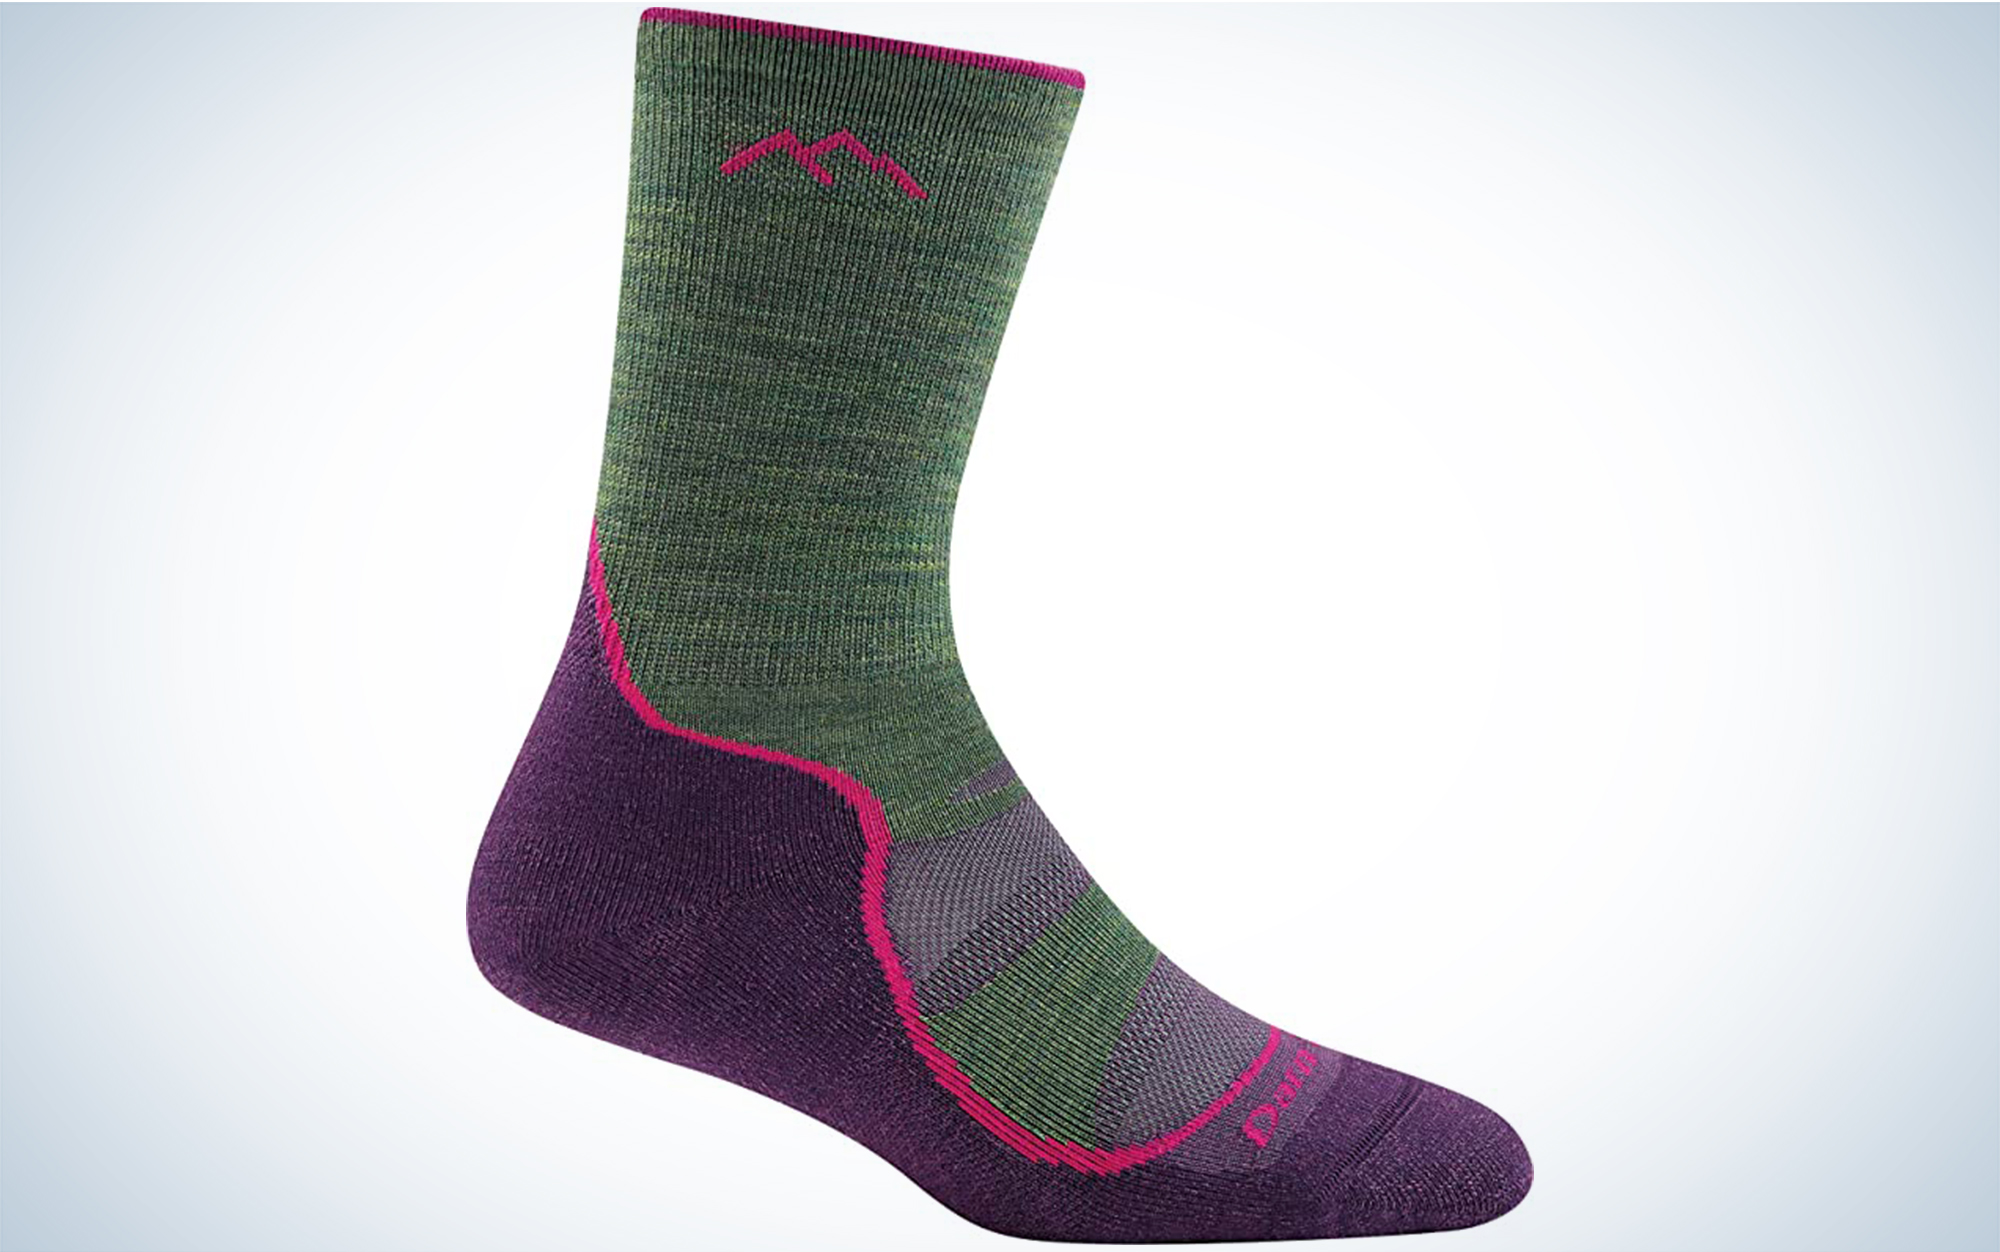 14 Best Wool Socks of 2022 - Top Wool Socks for Women